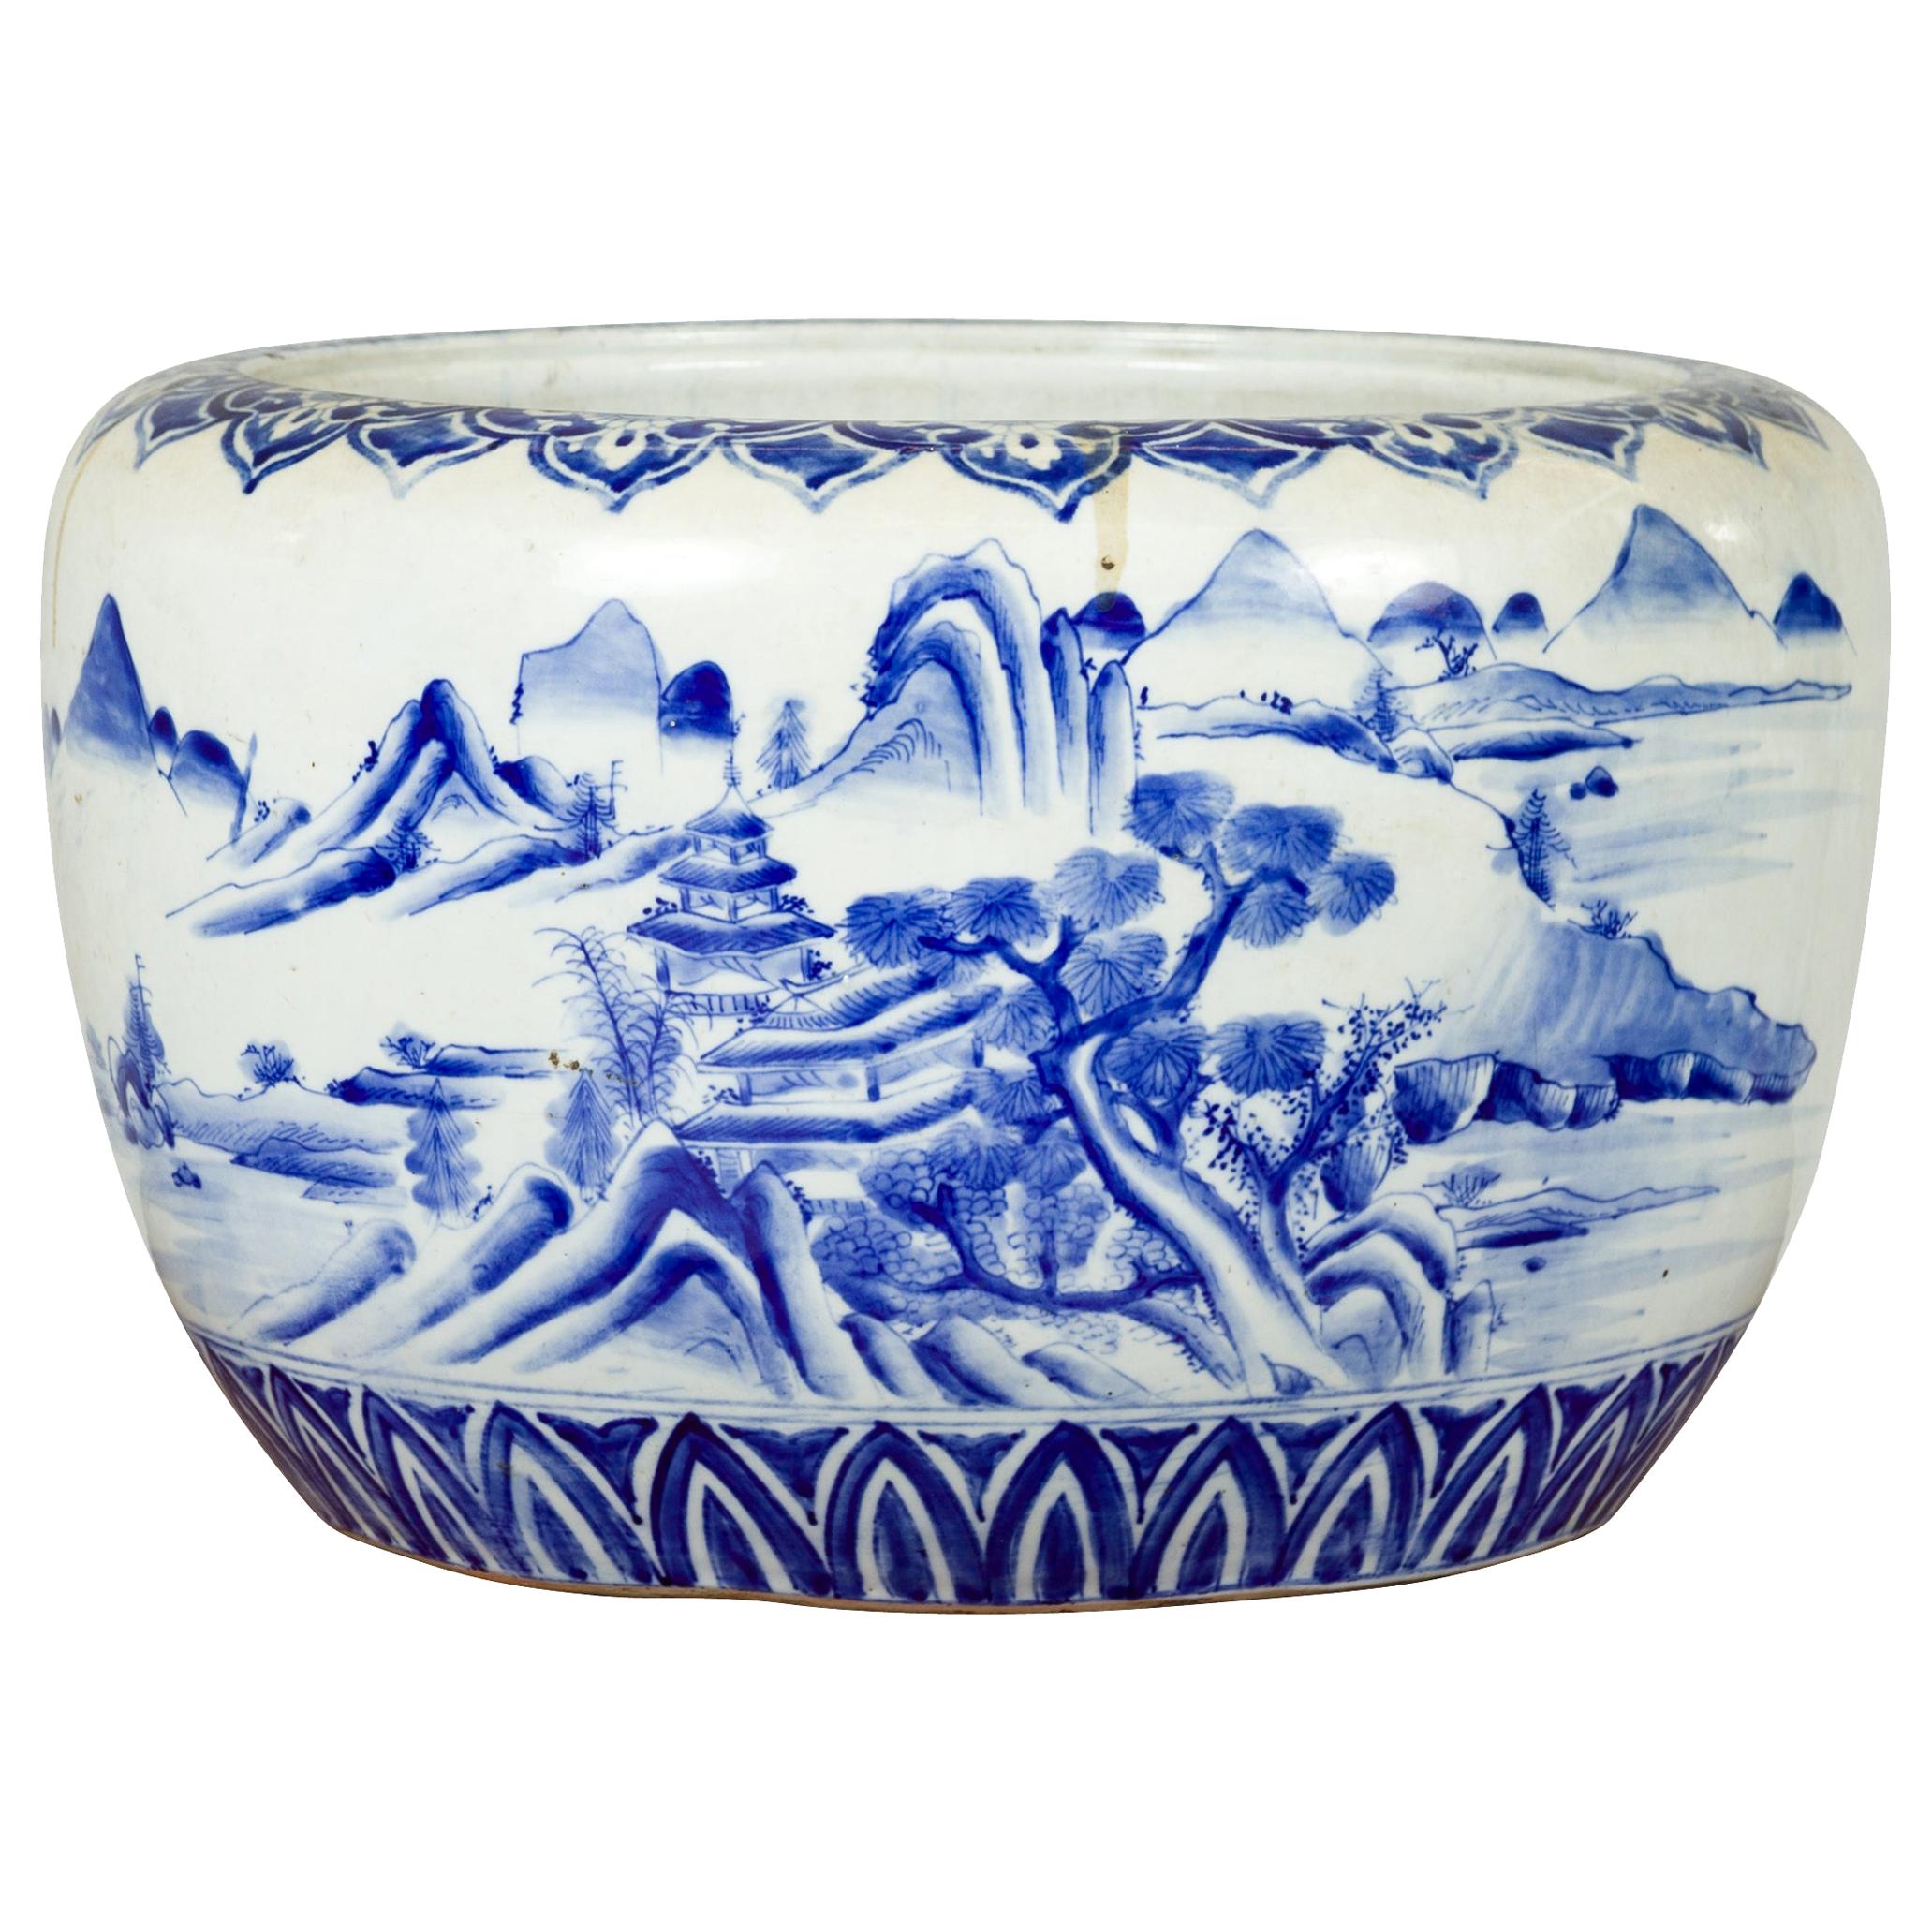 Jardinière ronde en porcelaine bleue et blanche de la période japonaise Meiji du 19ème siècle